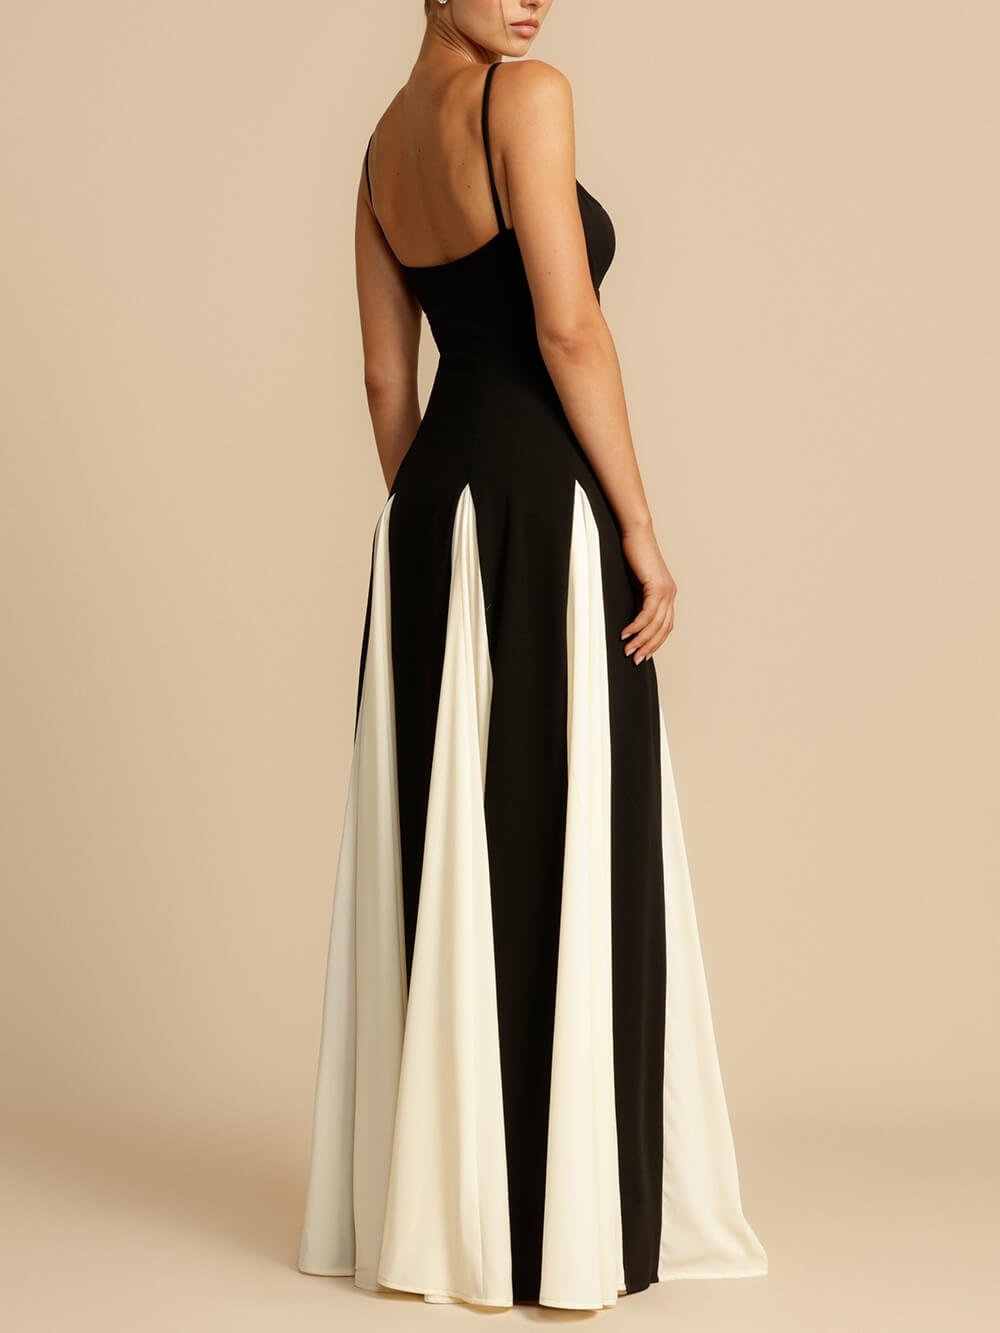 Elegancka sukienka maxi z tiulowymi panelami i dekoltem w kształcie litery A